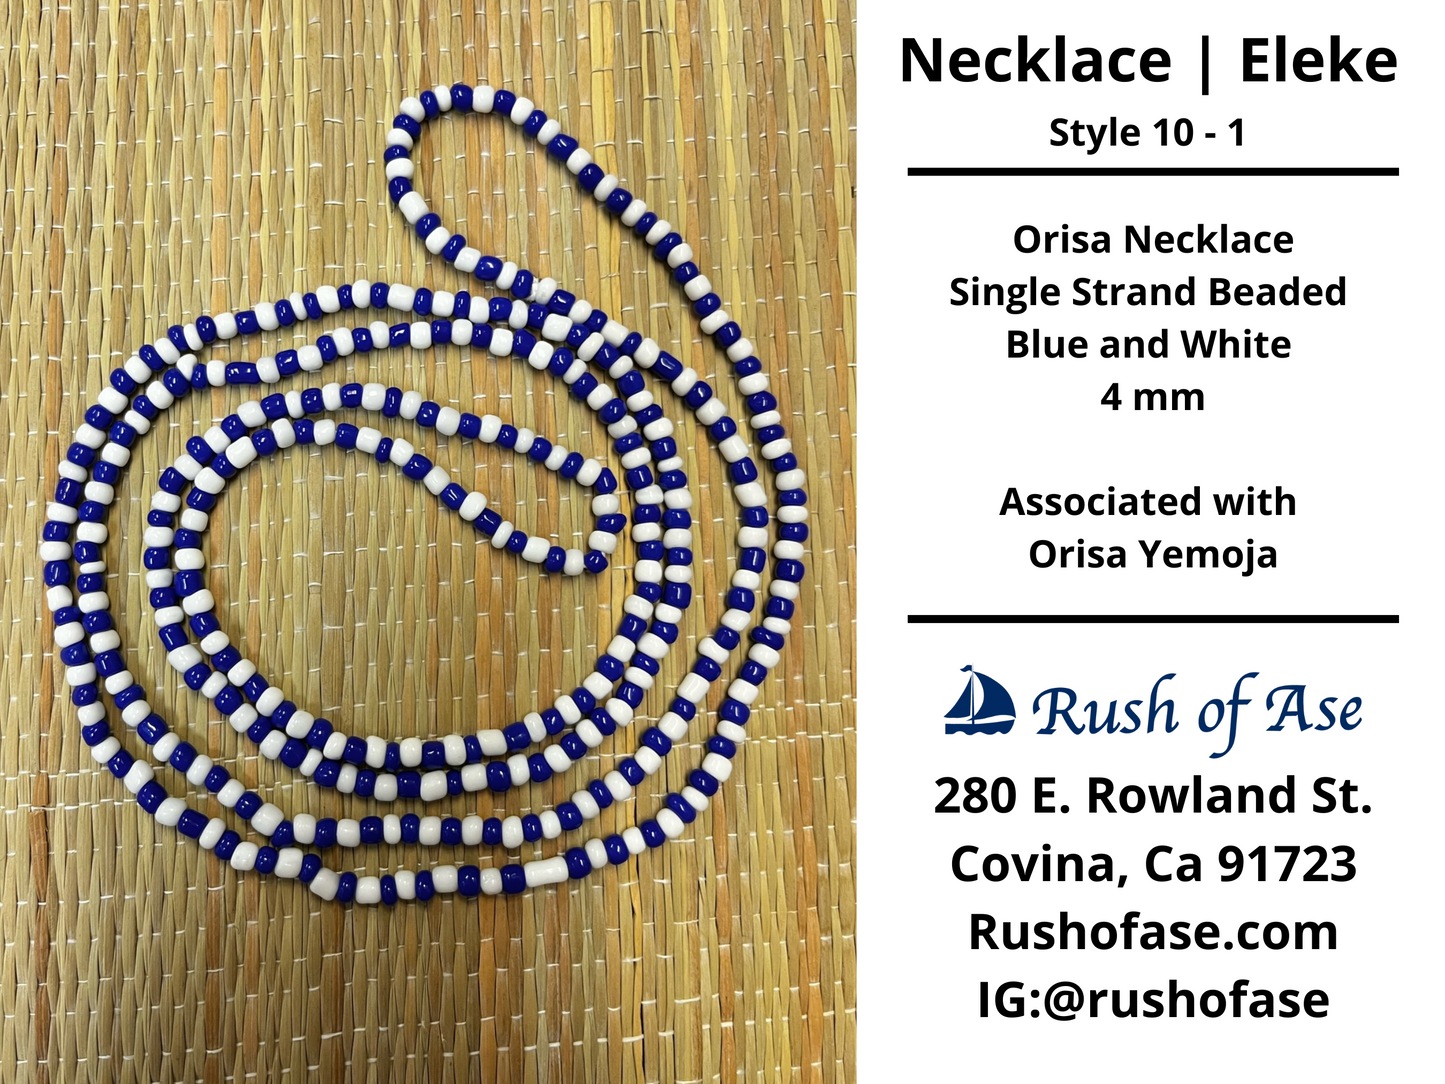 Necklaces | Eleke | Orisa Necklace - Single Strand Beaded Necklace - 4mm | Yemoja - Style 10-1